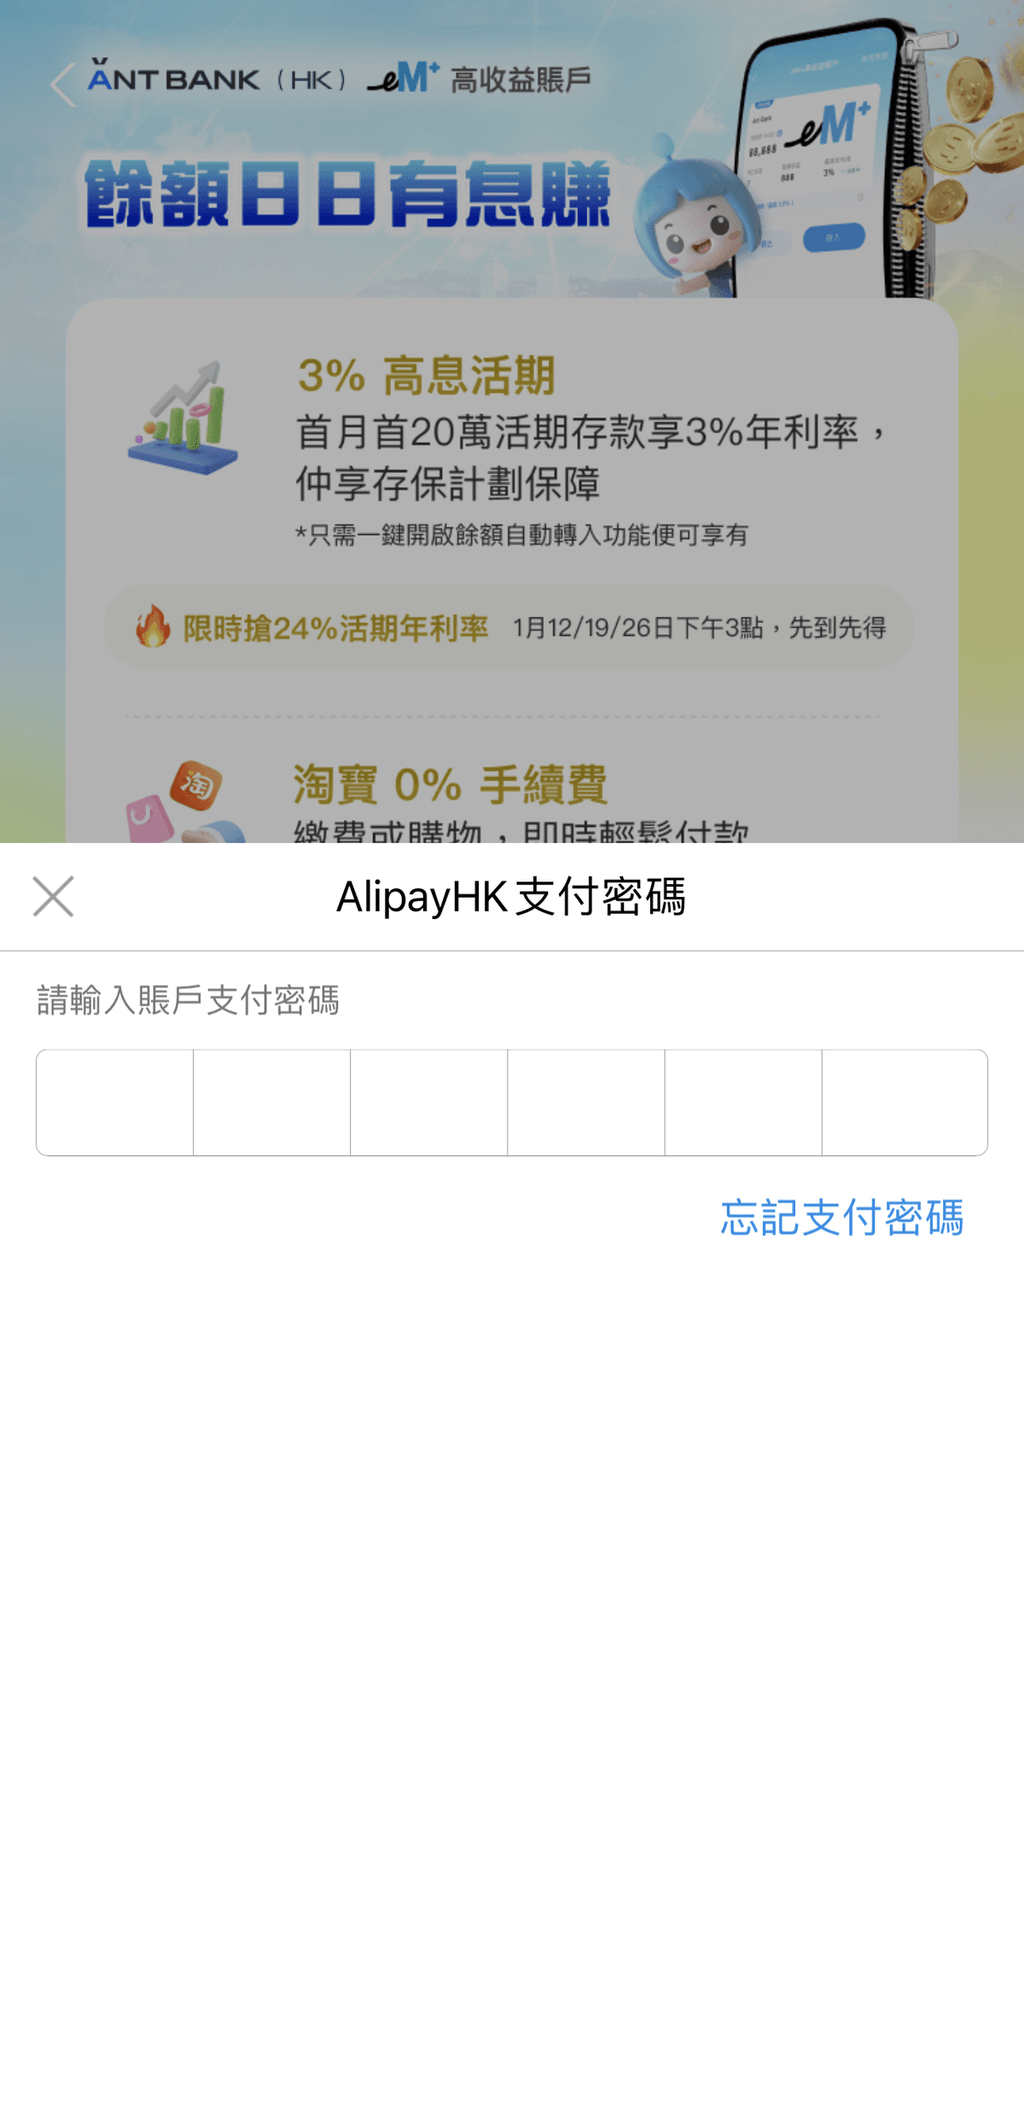 3. 输入AlipayHK支付密码确认同意和授权；